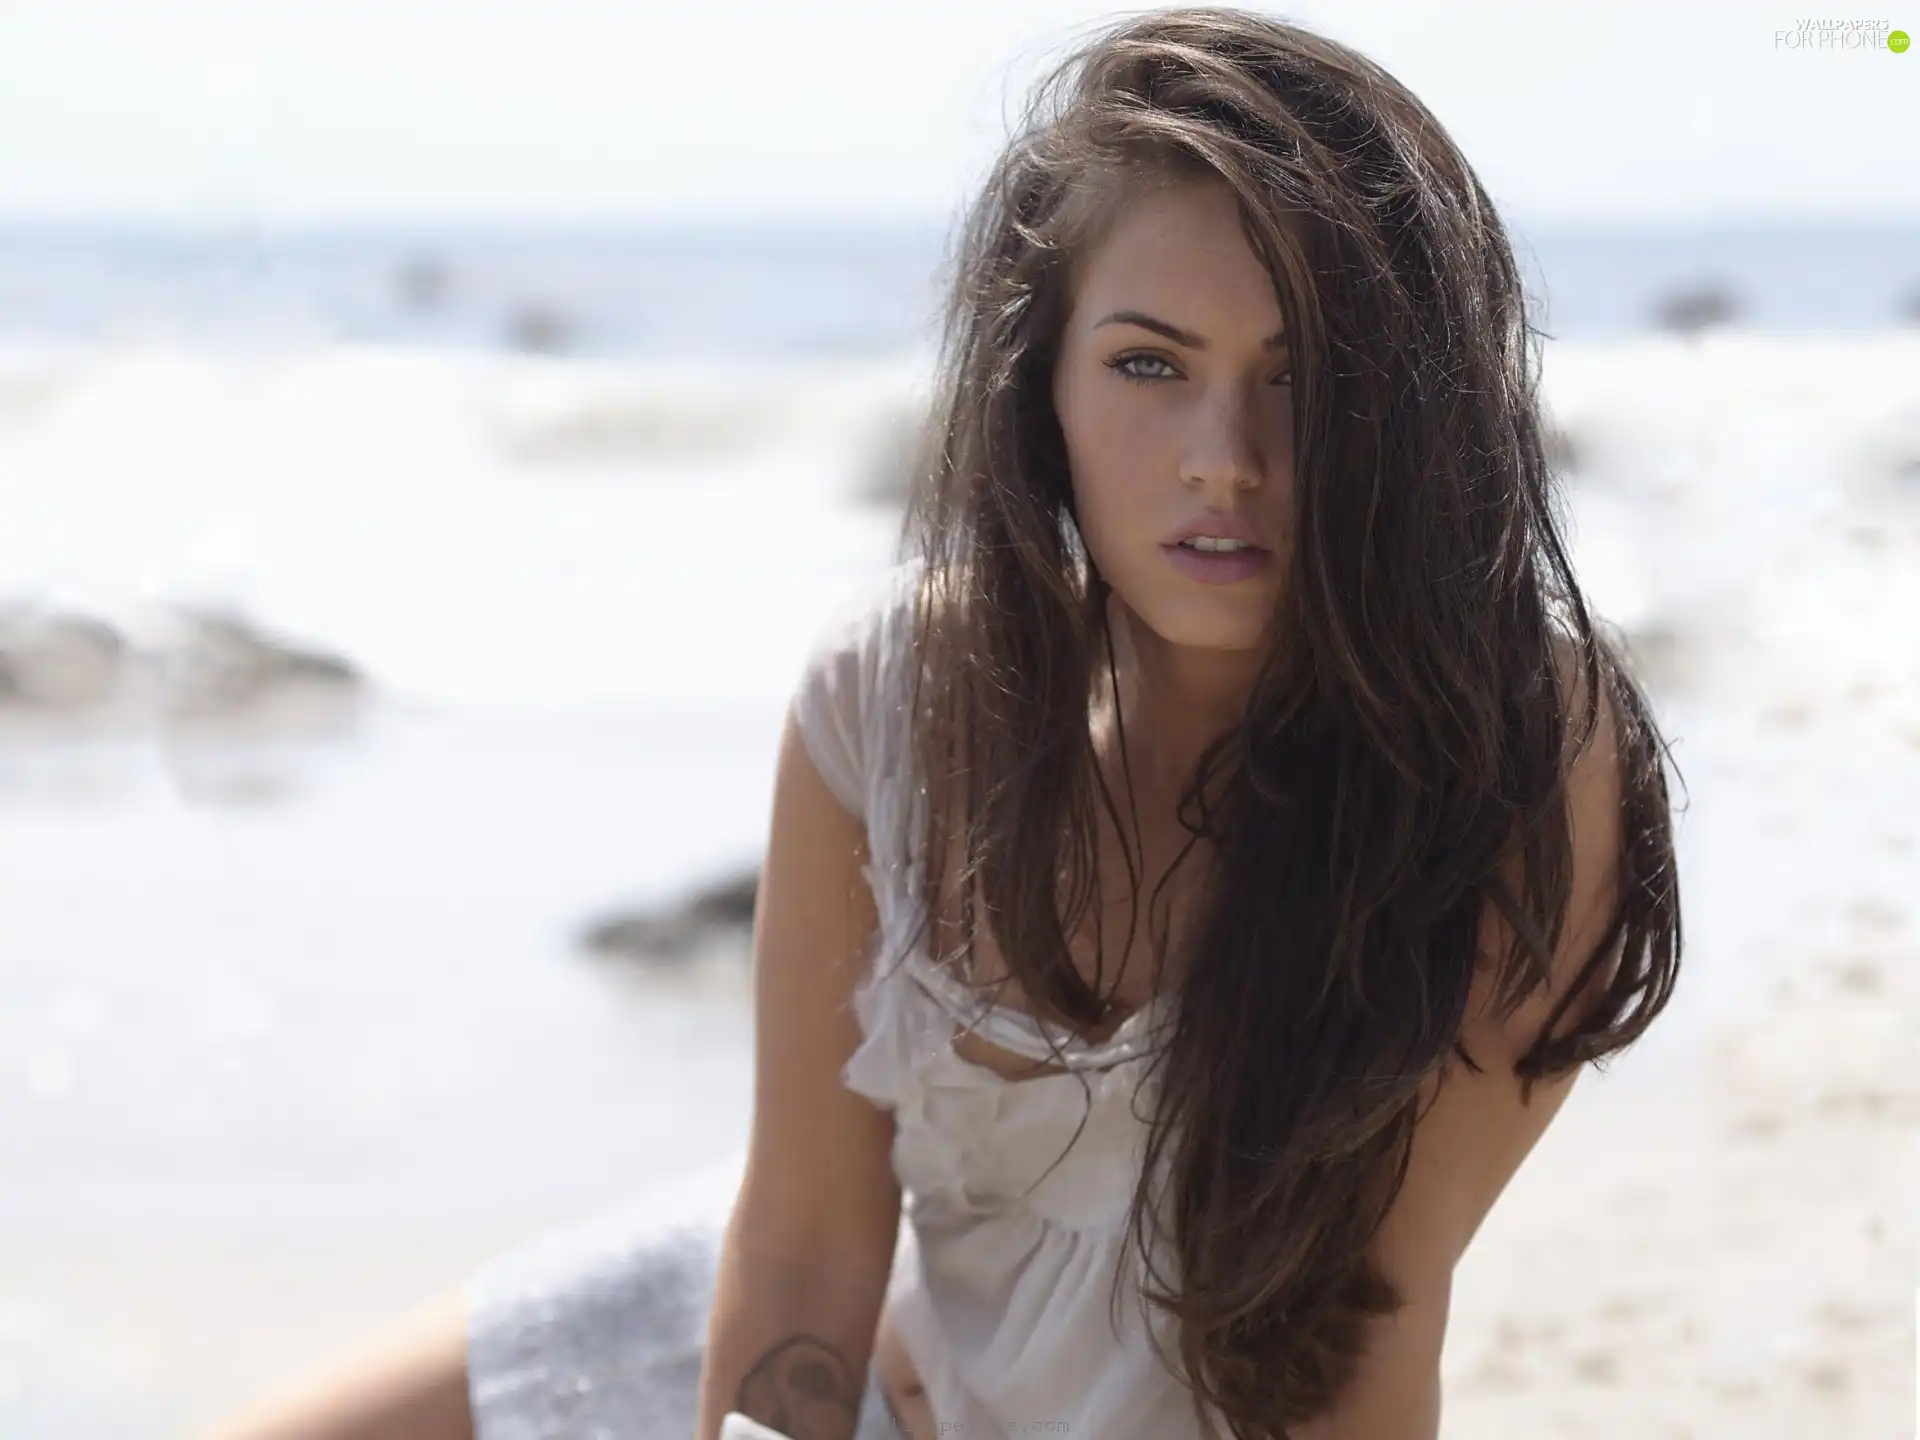 model, Megan Fox, actress